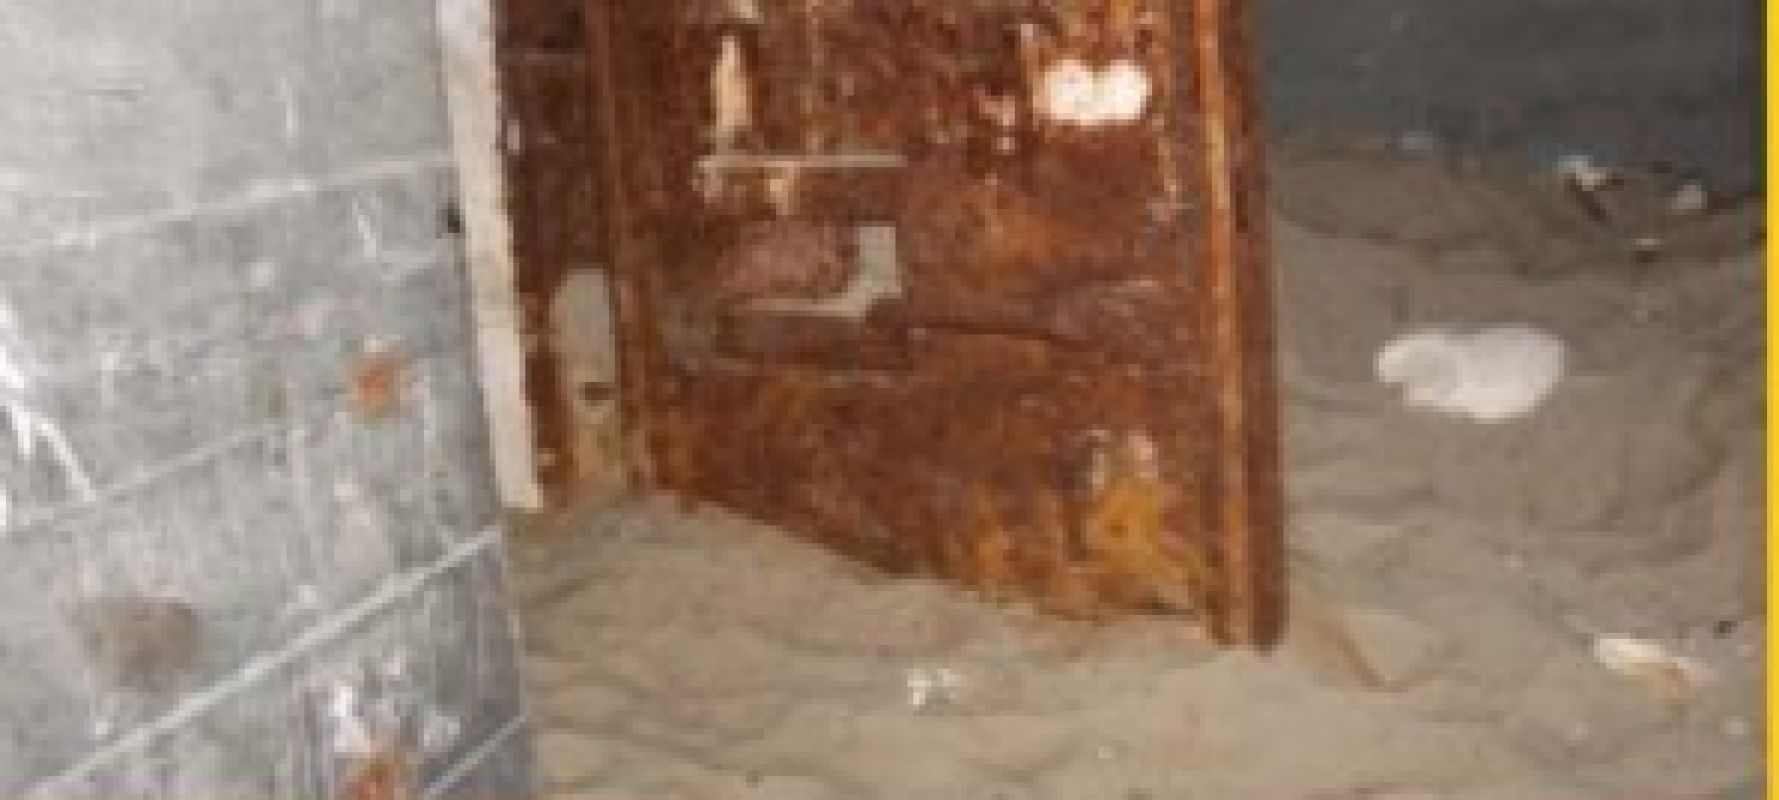 Шокирующее фото из Приморья: В заброшенном бункере нашли реального пришельца? 